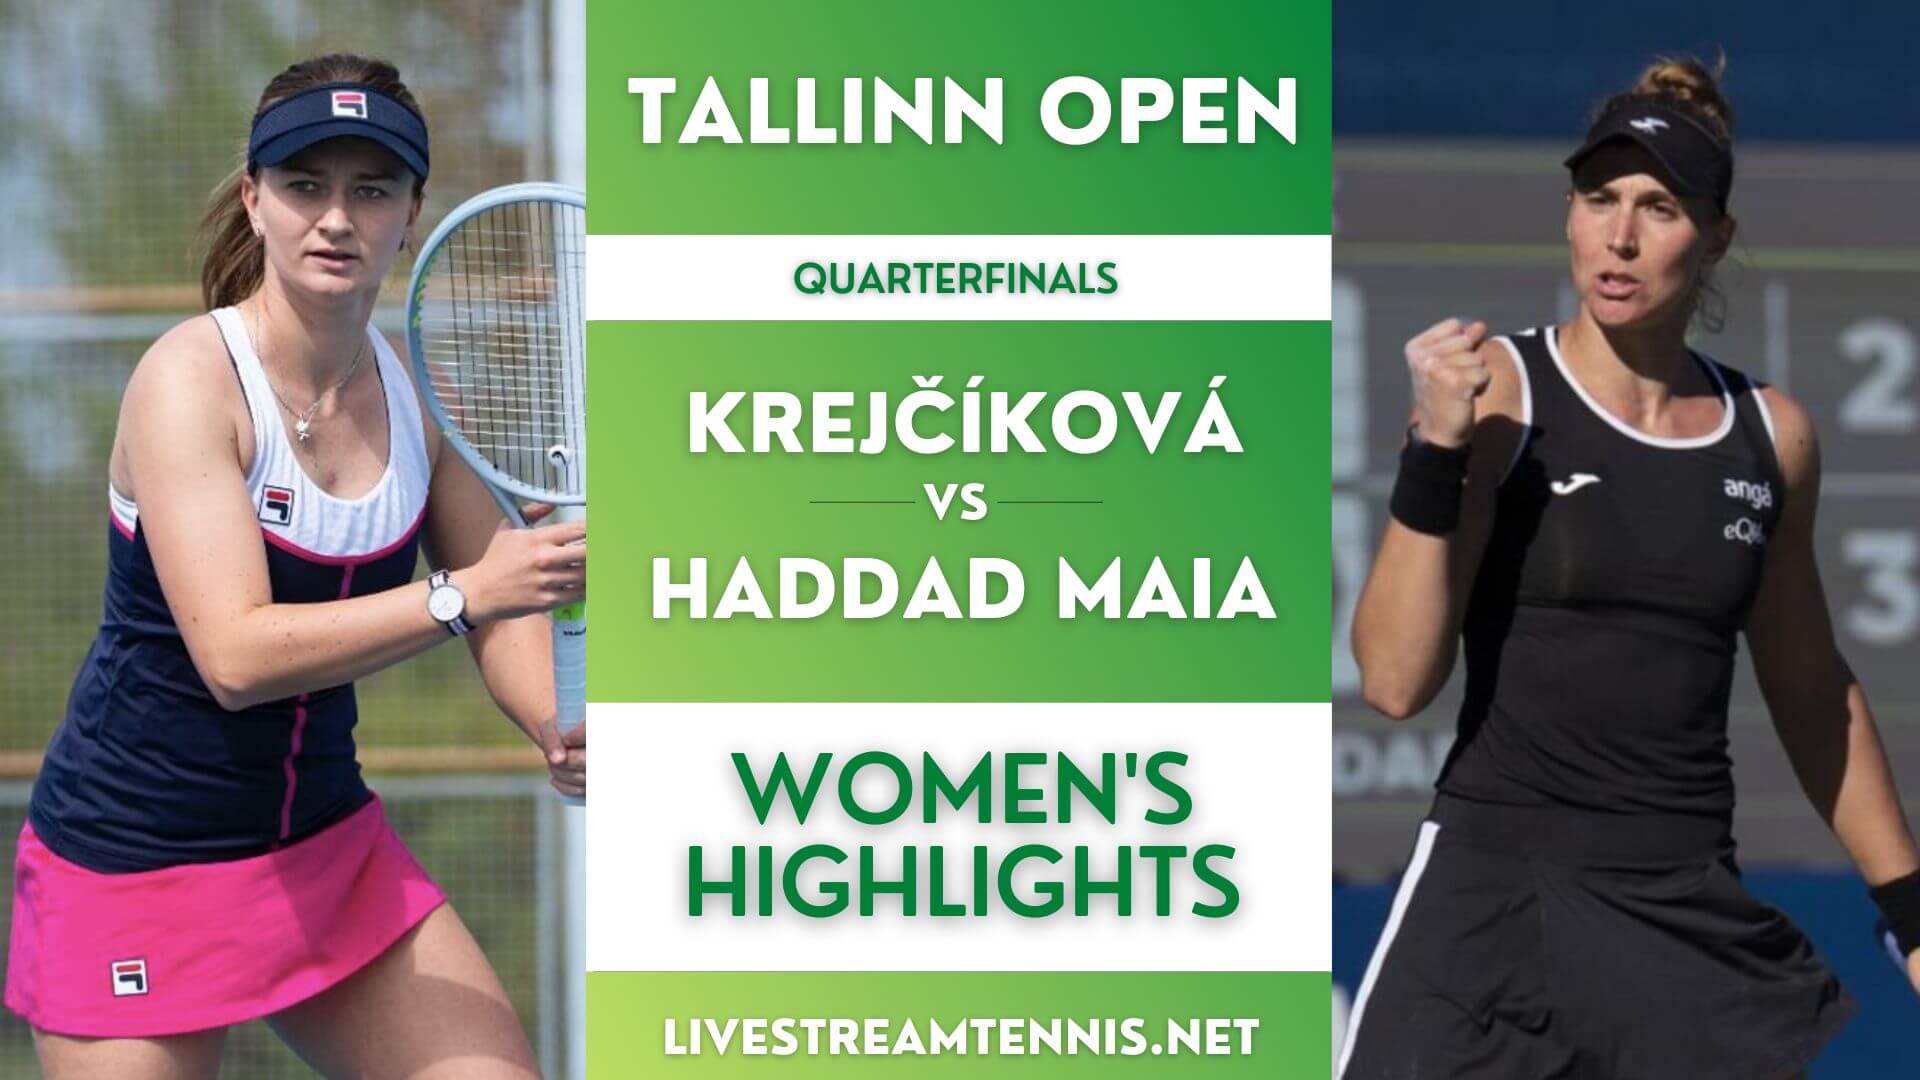 Tallinn Open Women Quarterfinal 3 Highlights 2022